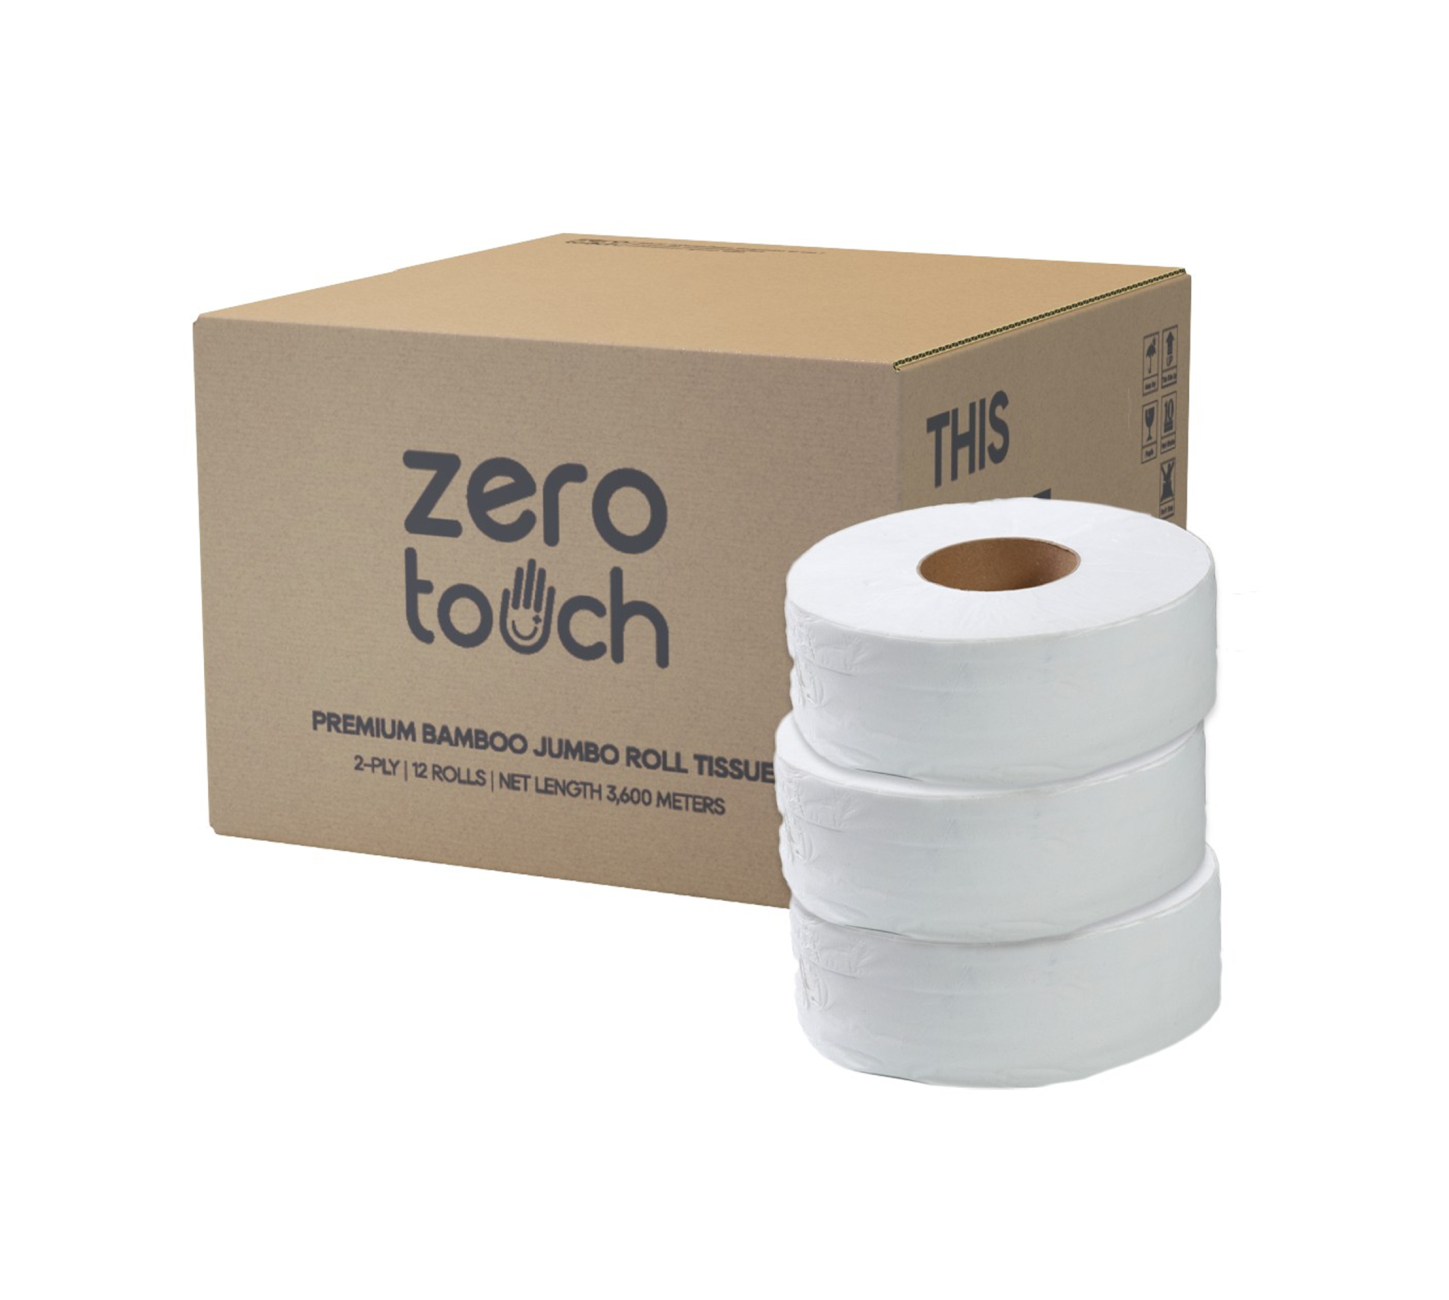 ZERO-TOUCH ทิชชู่เยื่อกระดาษบริสุทธิ์ 100%แบบม้วนใหญ่ ความหนา 1 ชั้น ยาว 500 เมตร